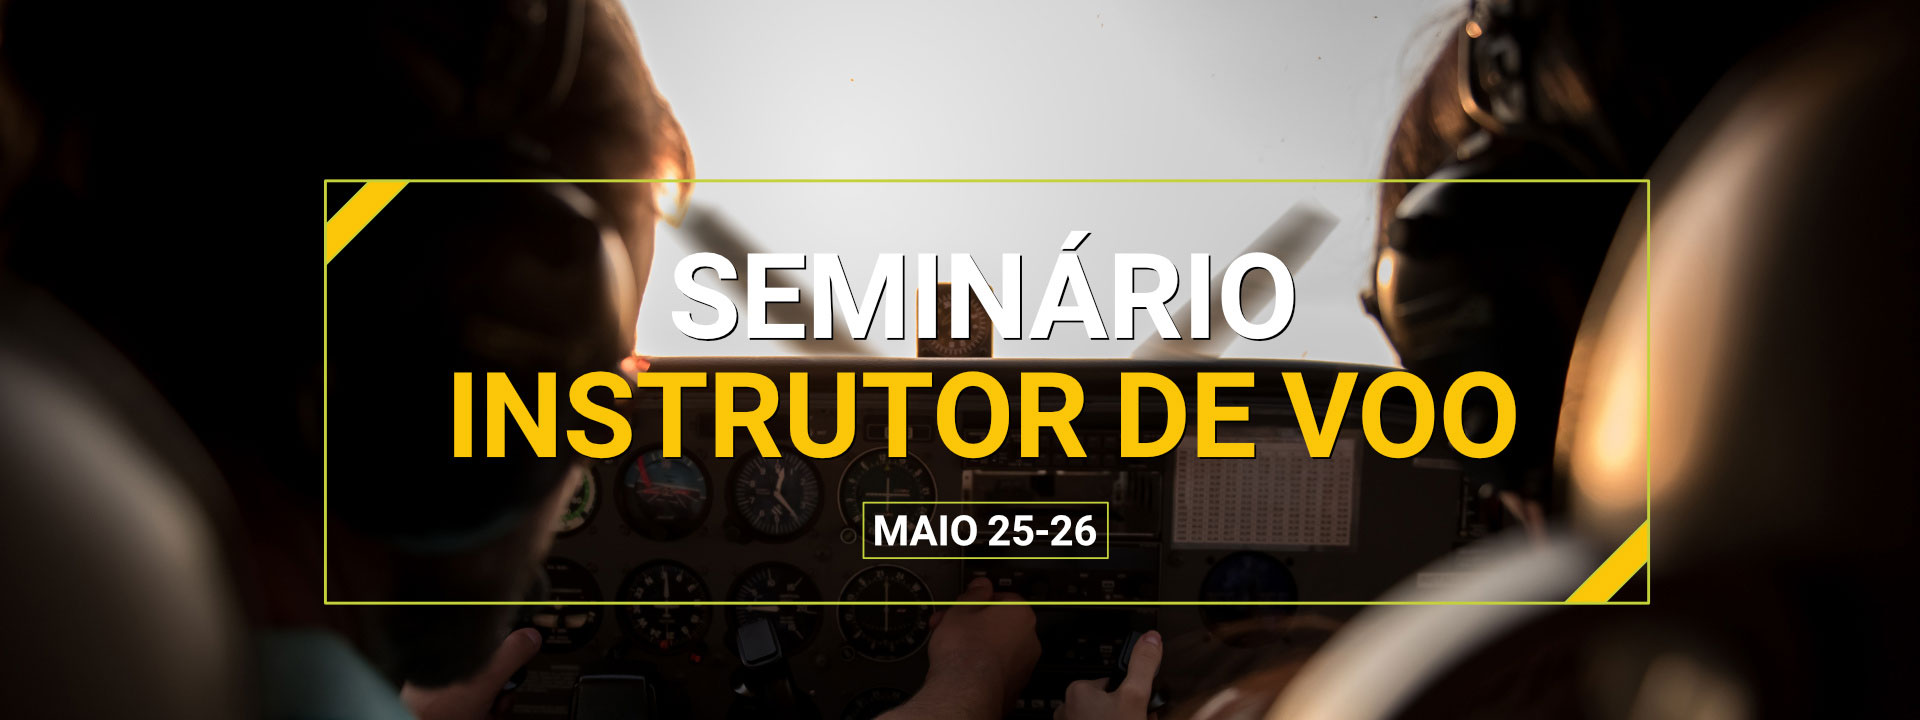 Seminário para Instrutores de Voo - Maio 25-26